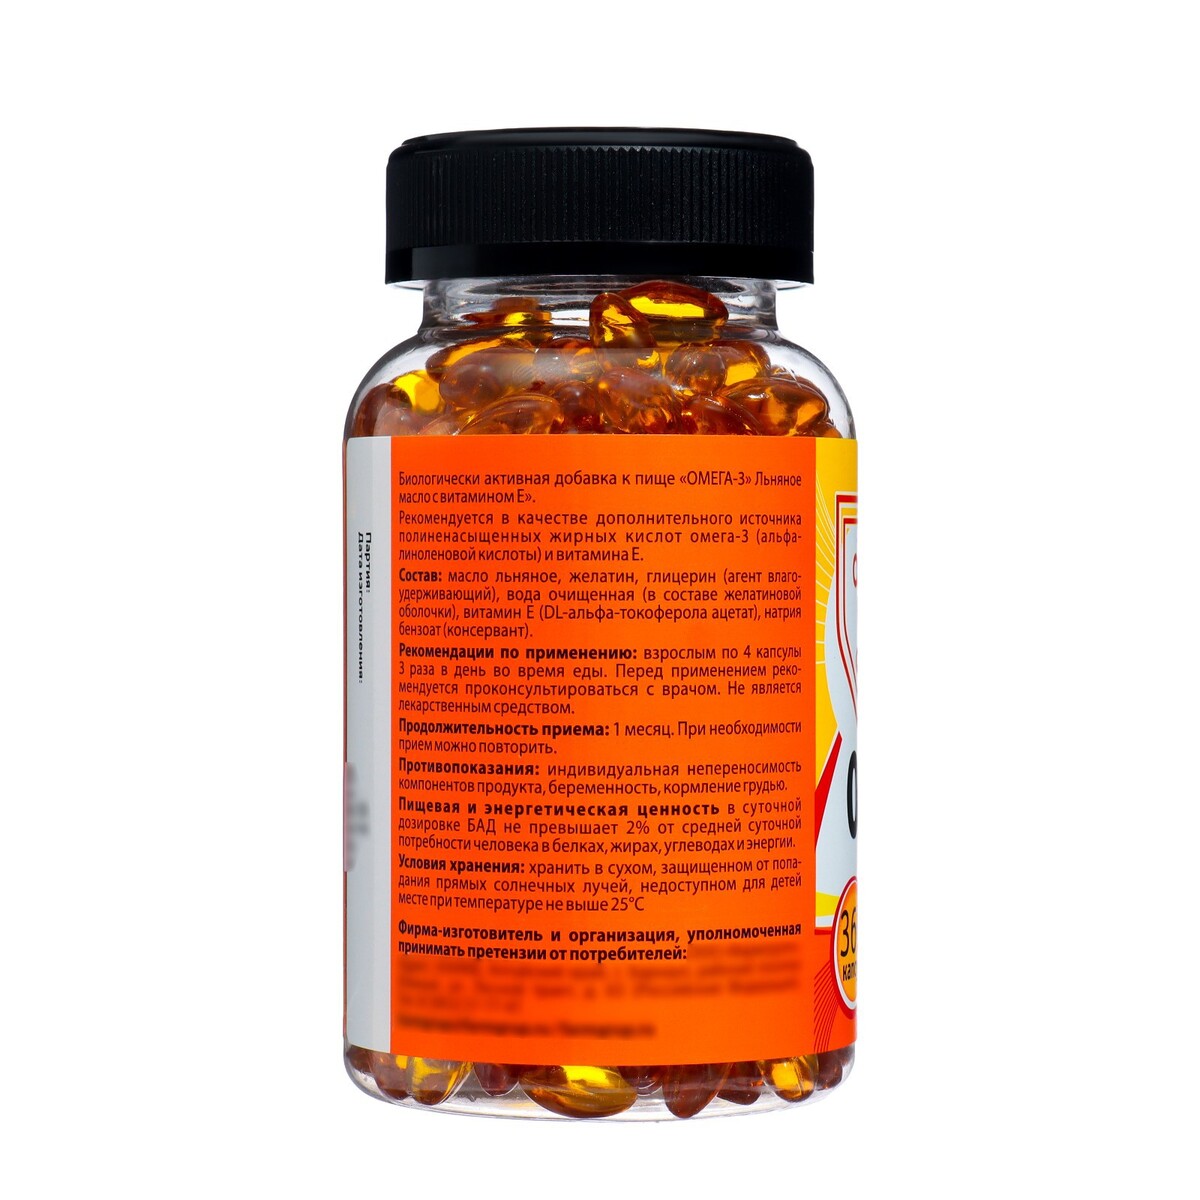 Омега-3 льняное масло с витамином е, 360 капсул по 350 мг Vitamuno 08129615 - фото 2